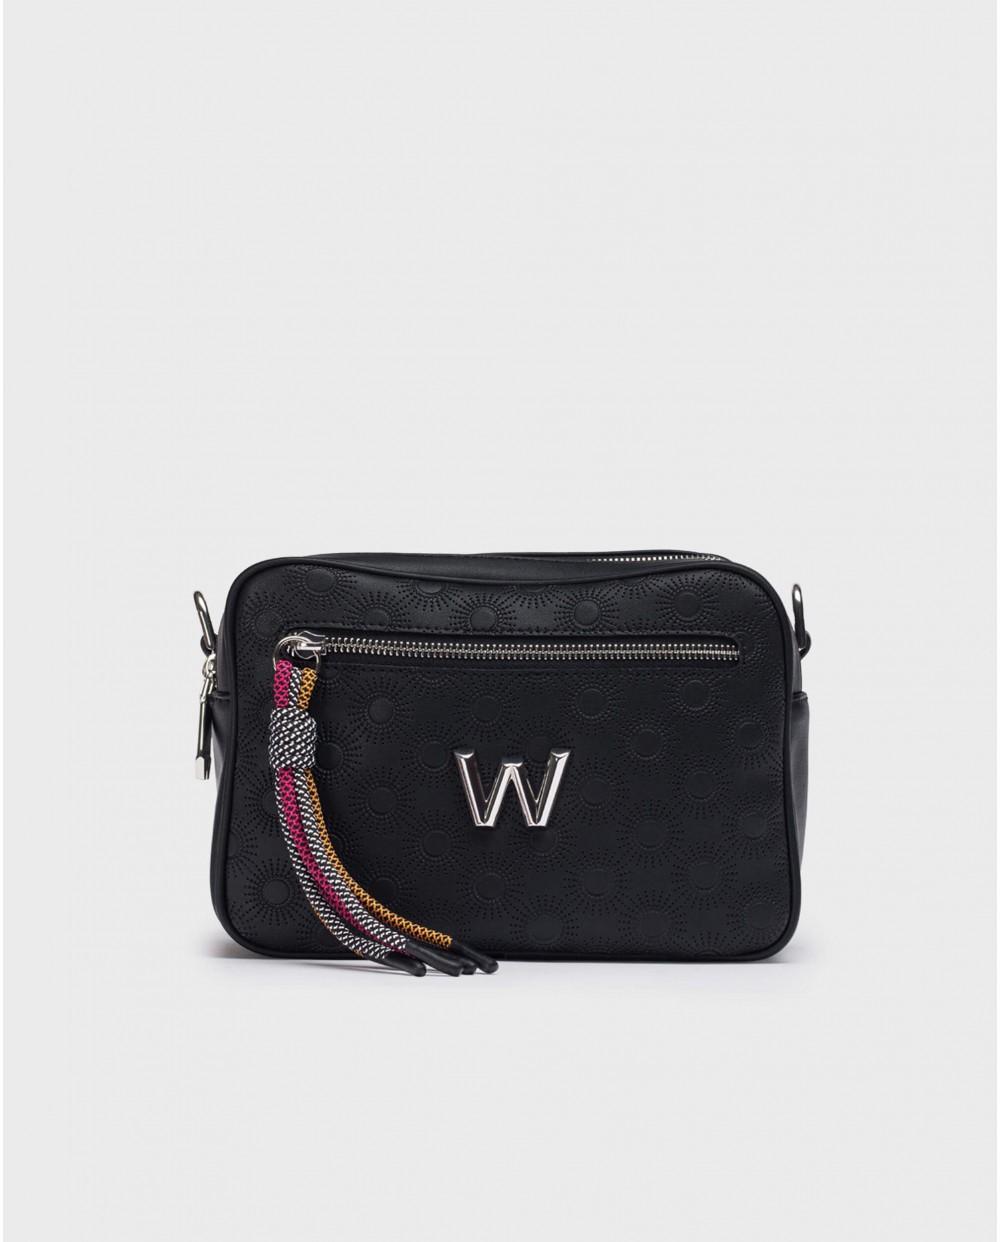 Wonders-Women accessories-Black JADE Bag